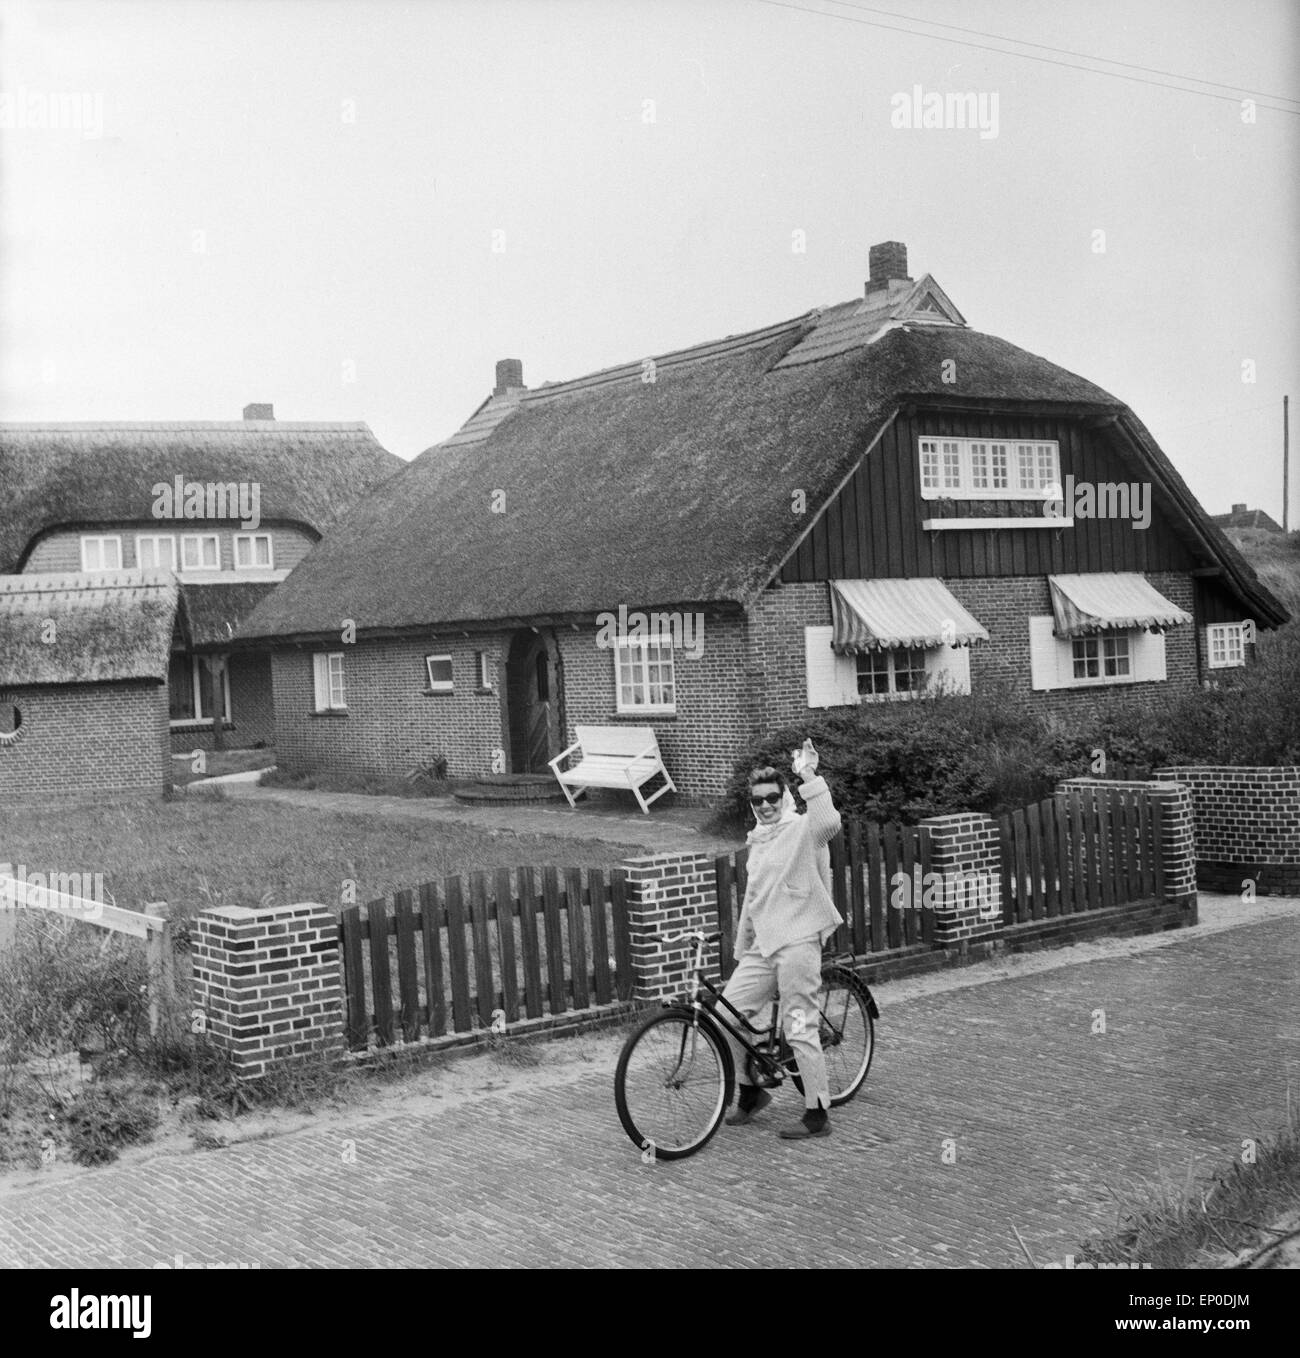 Deutsche Sängerin und Schauspielerin Lale Andersen vor ihrem Haus Sonnenhof auf der Nordseeinsel Langeoog, Mitte 1957. Germa Foto Stock